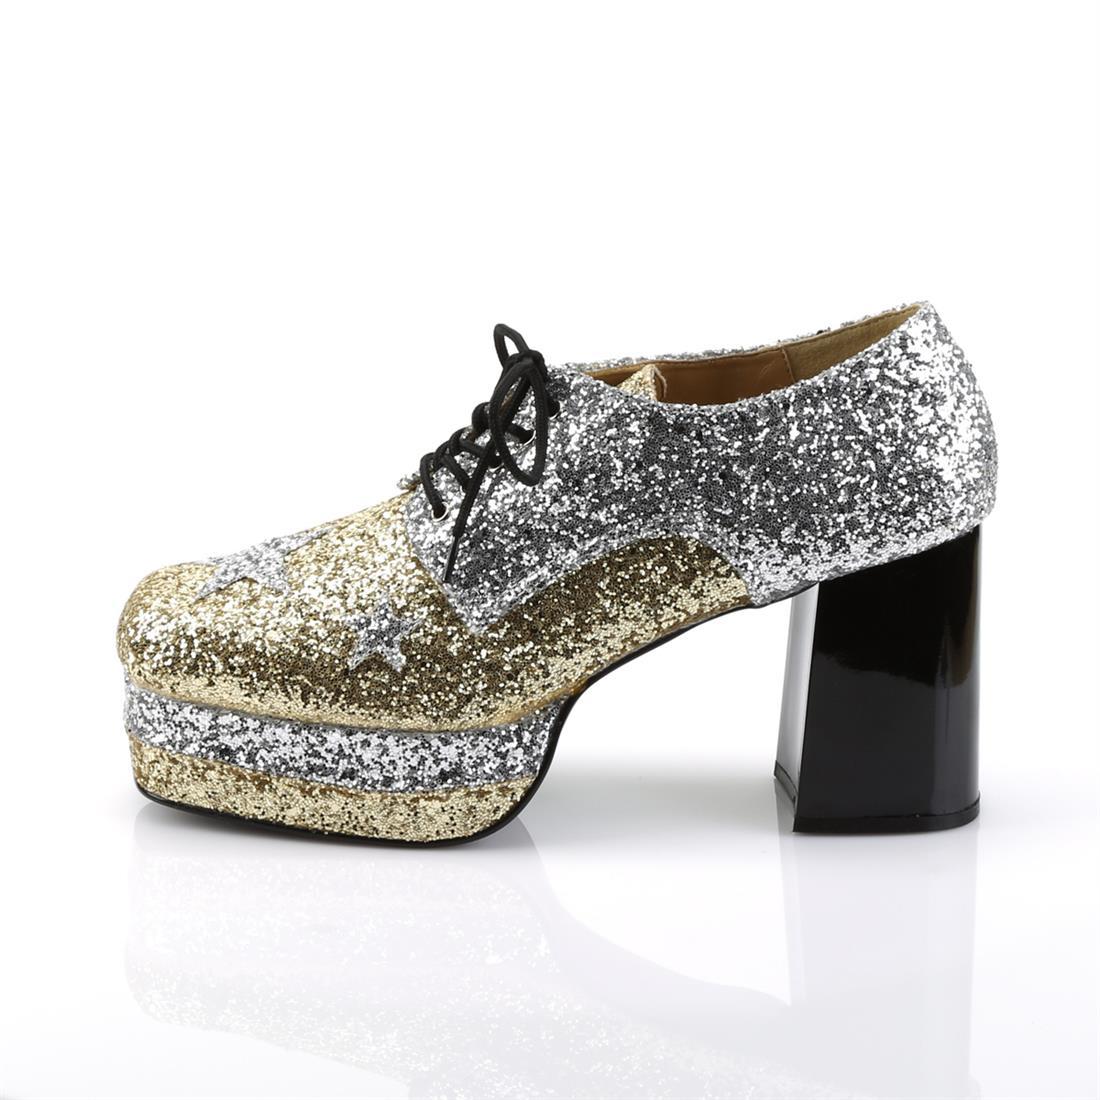 Glam Rock Platform Shoes - Gold/Silver